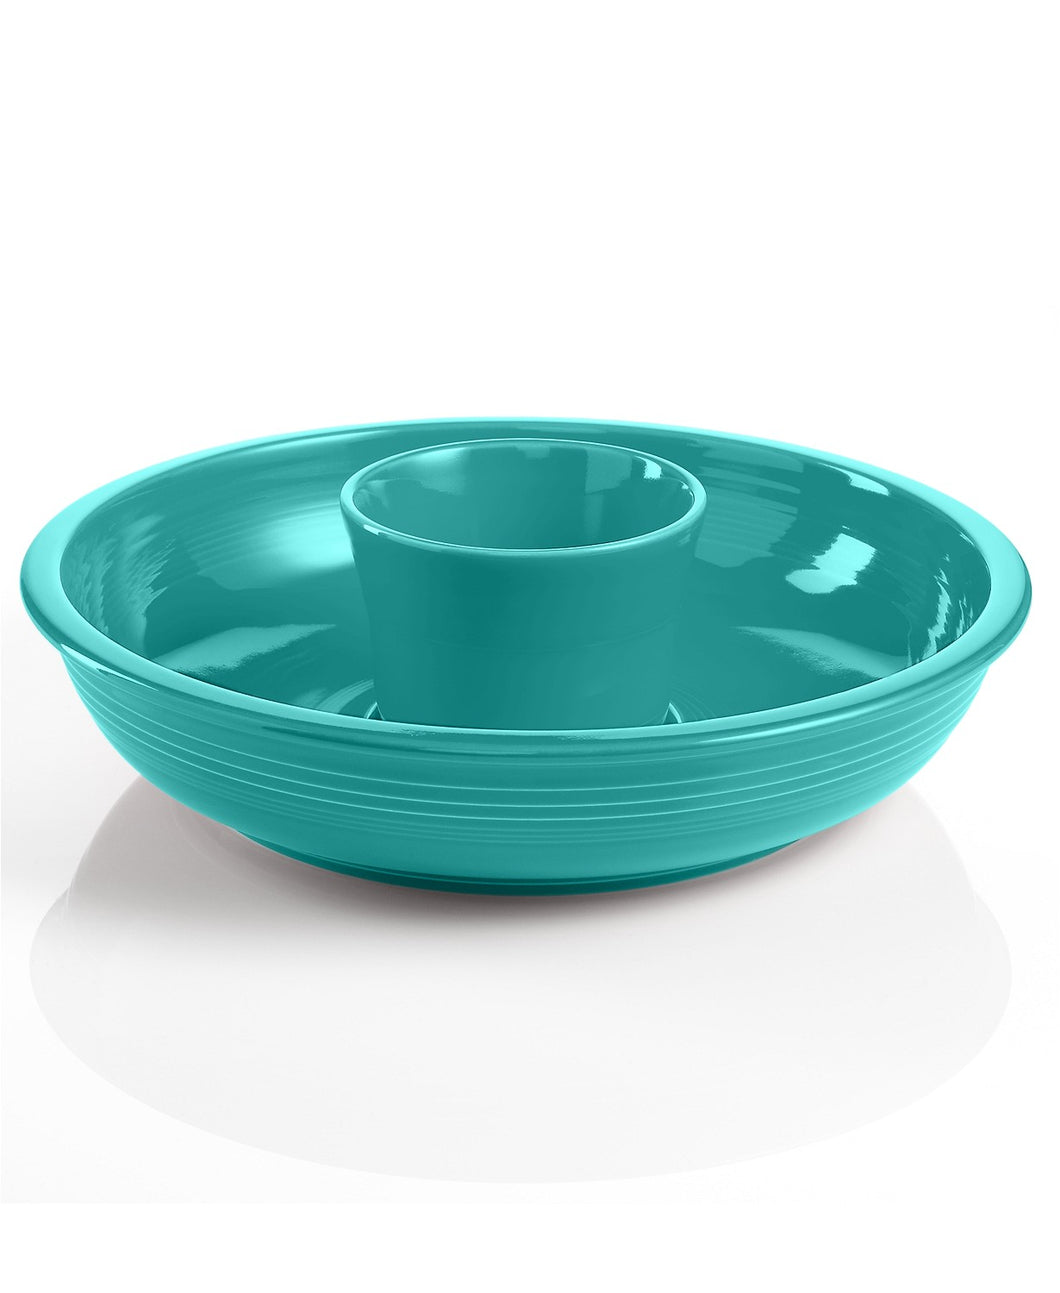 2 Pc Turquoise Chip-N-Dip Set